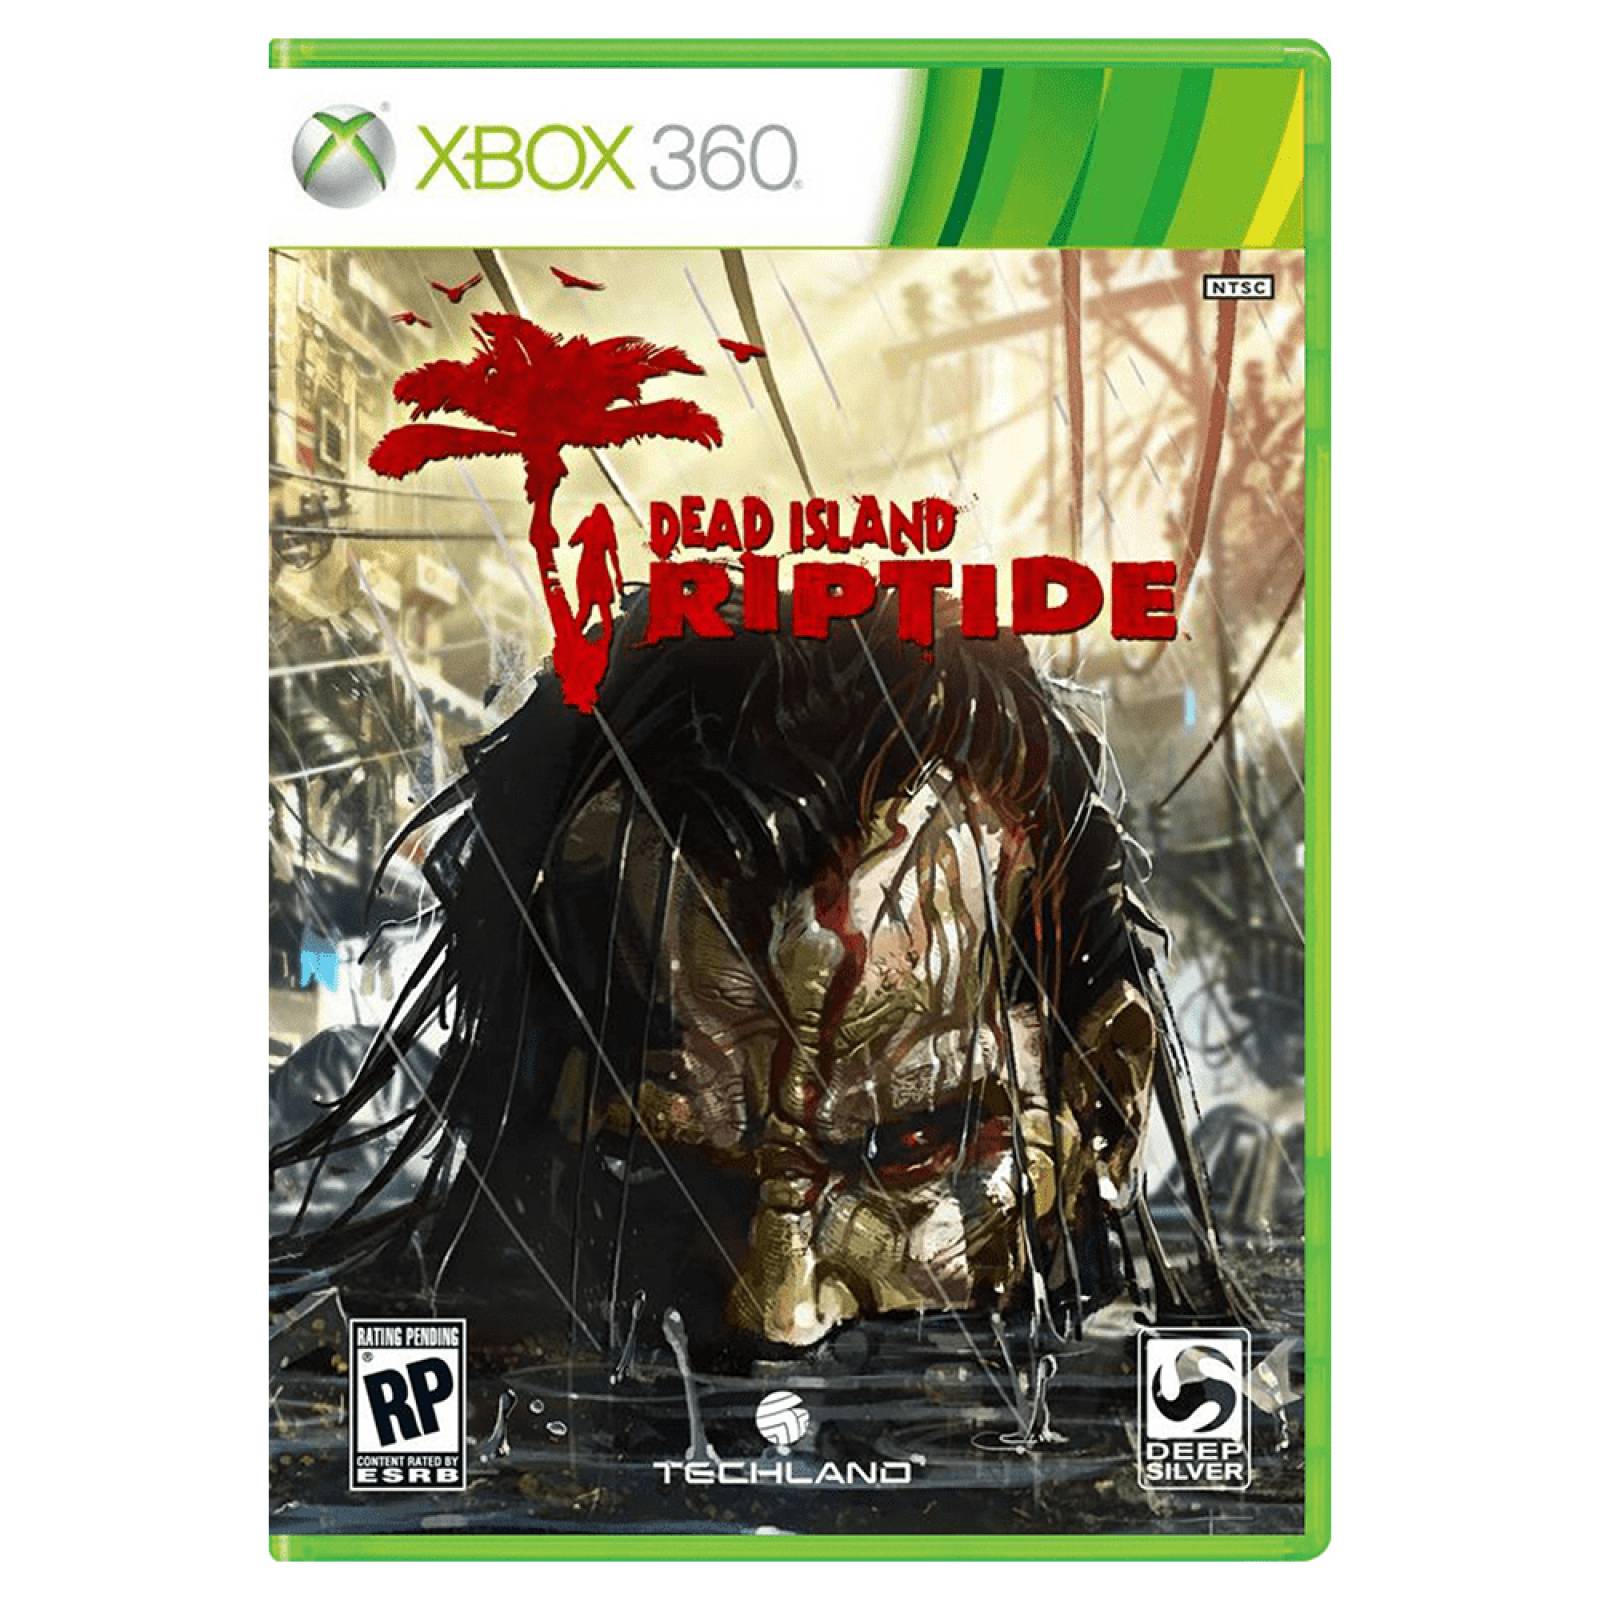 Dead Island Riptide Dessp Silver Xbox 360 S001 